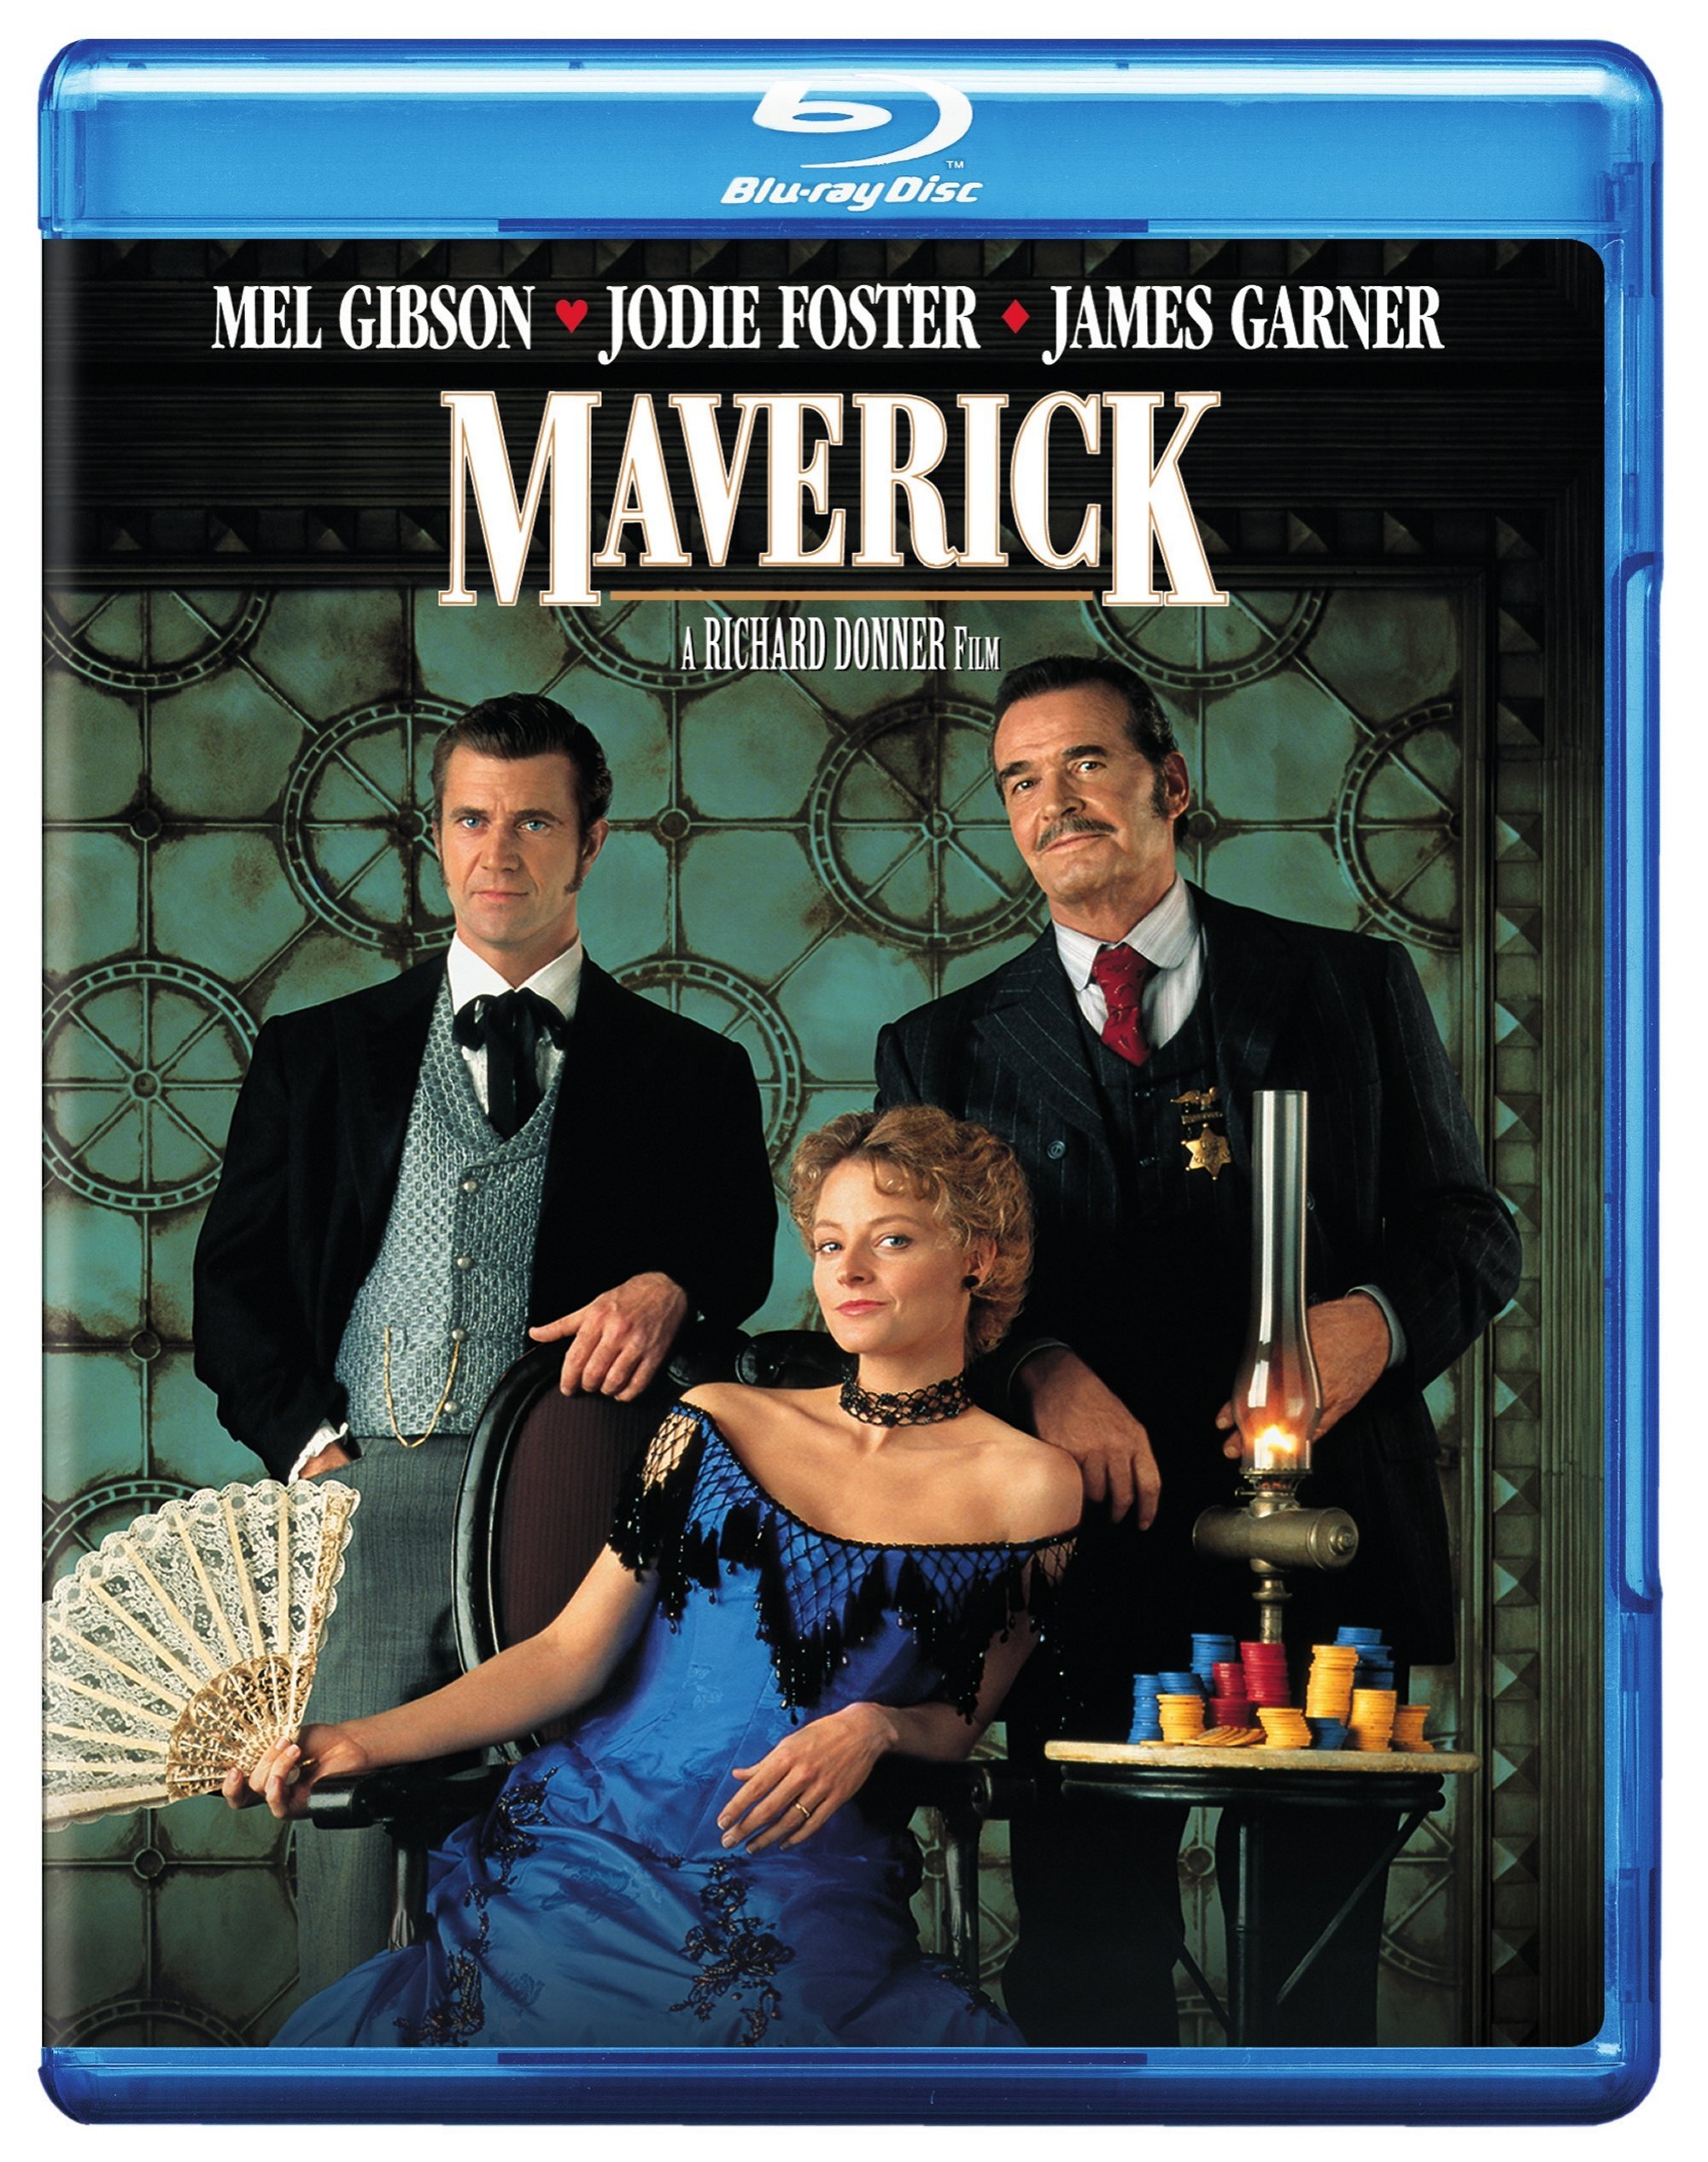 Maverick - Blu-ray [ 1994 ]  - Western Movies On Blu-ray - Movies On GRUV